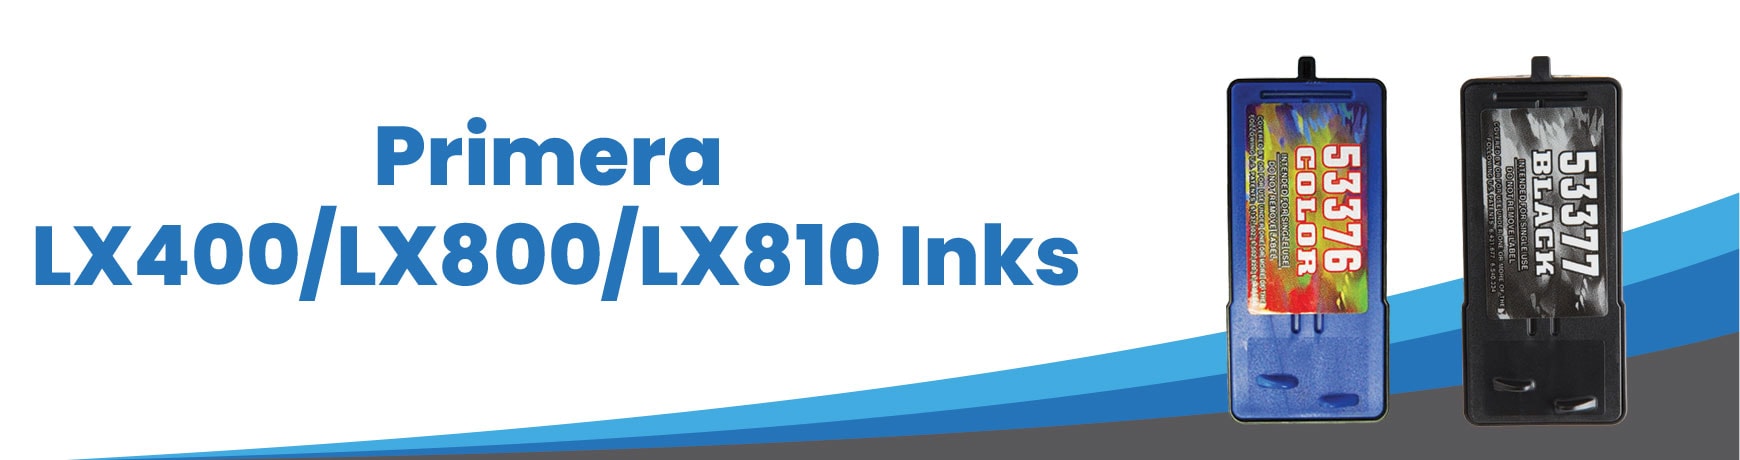 Primera LX400/LX800/LX810 Inks